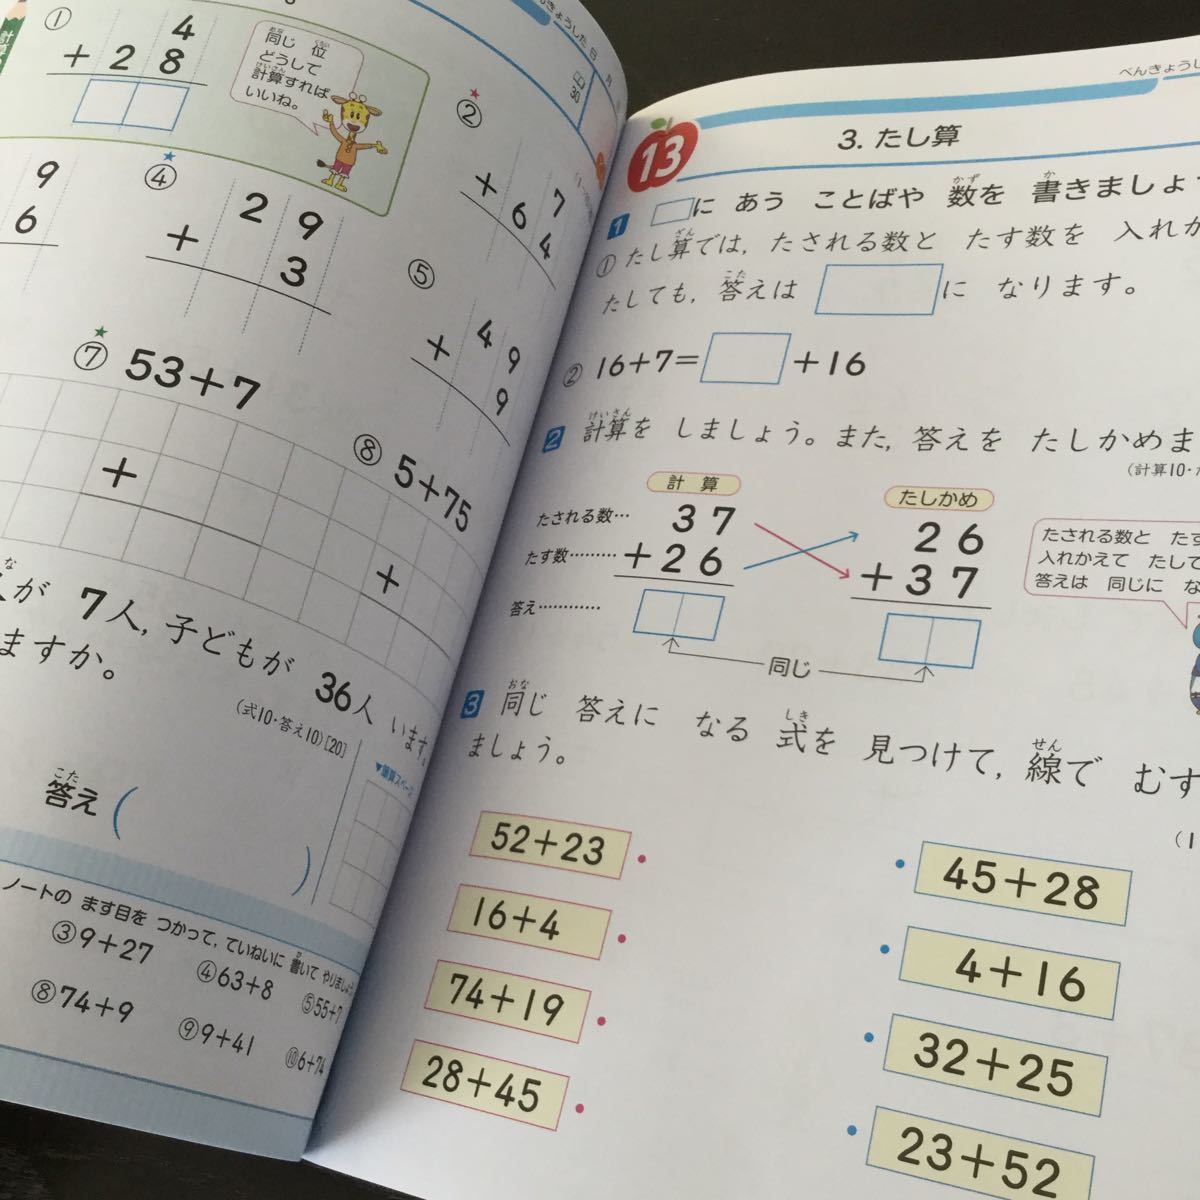 Bド29 二年生学習ドリル問題集国語算数漢字理科社会英語テスト試験勉強小学生テキストテスト用紙教材文章問題計算日本代购 买对网